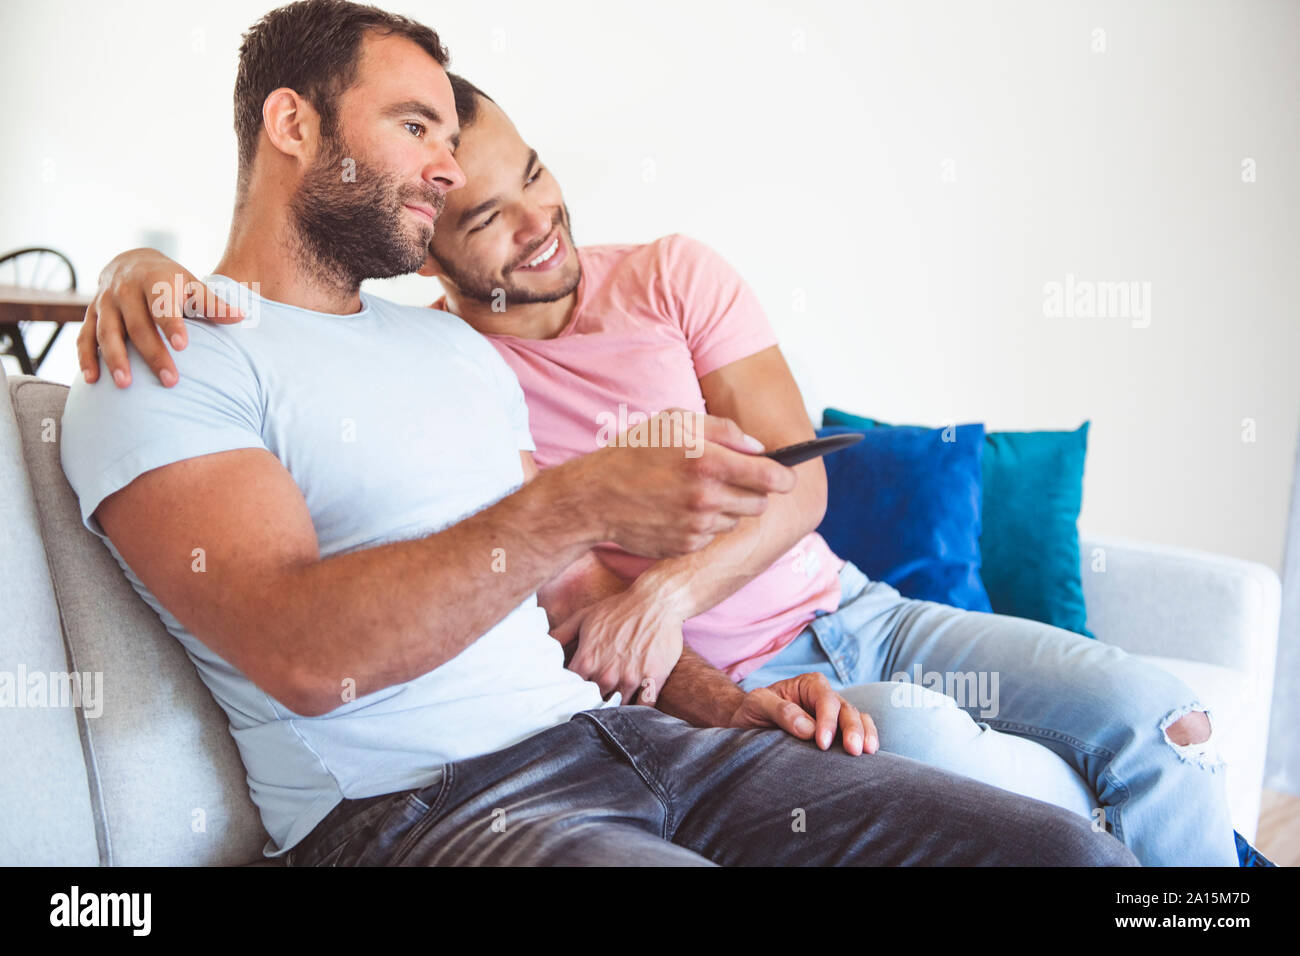 Un Portrait d'un homme mignon couple gay à la maison Banque D'Images